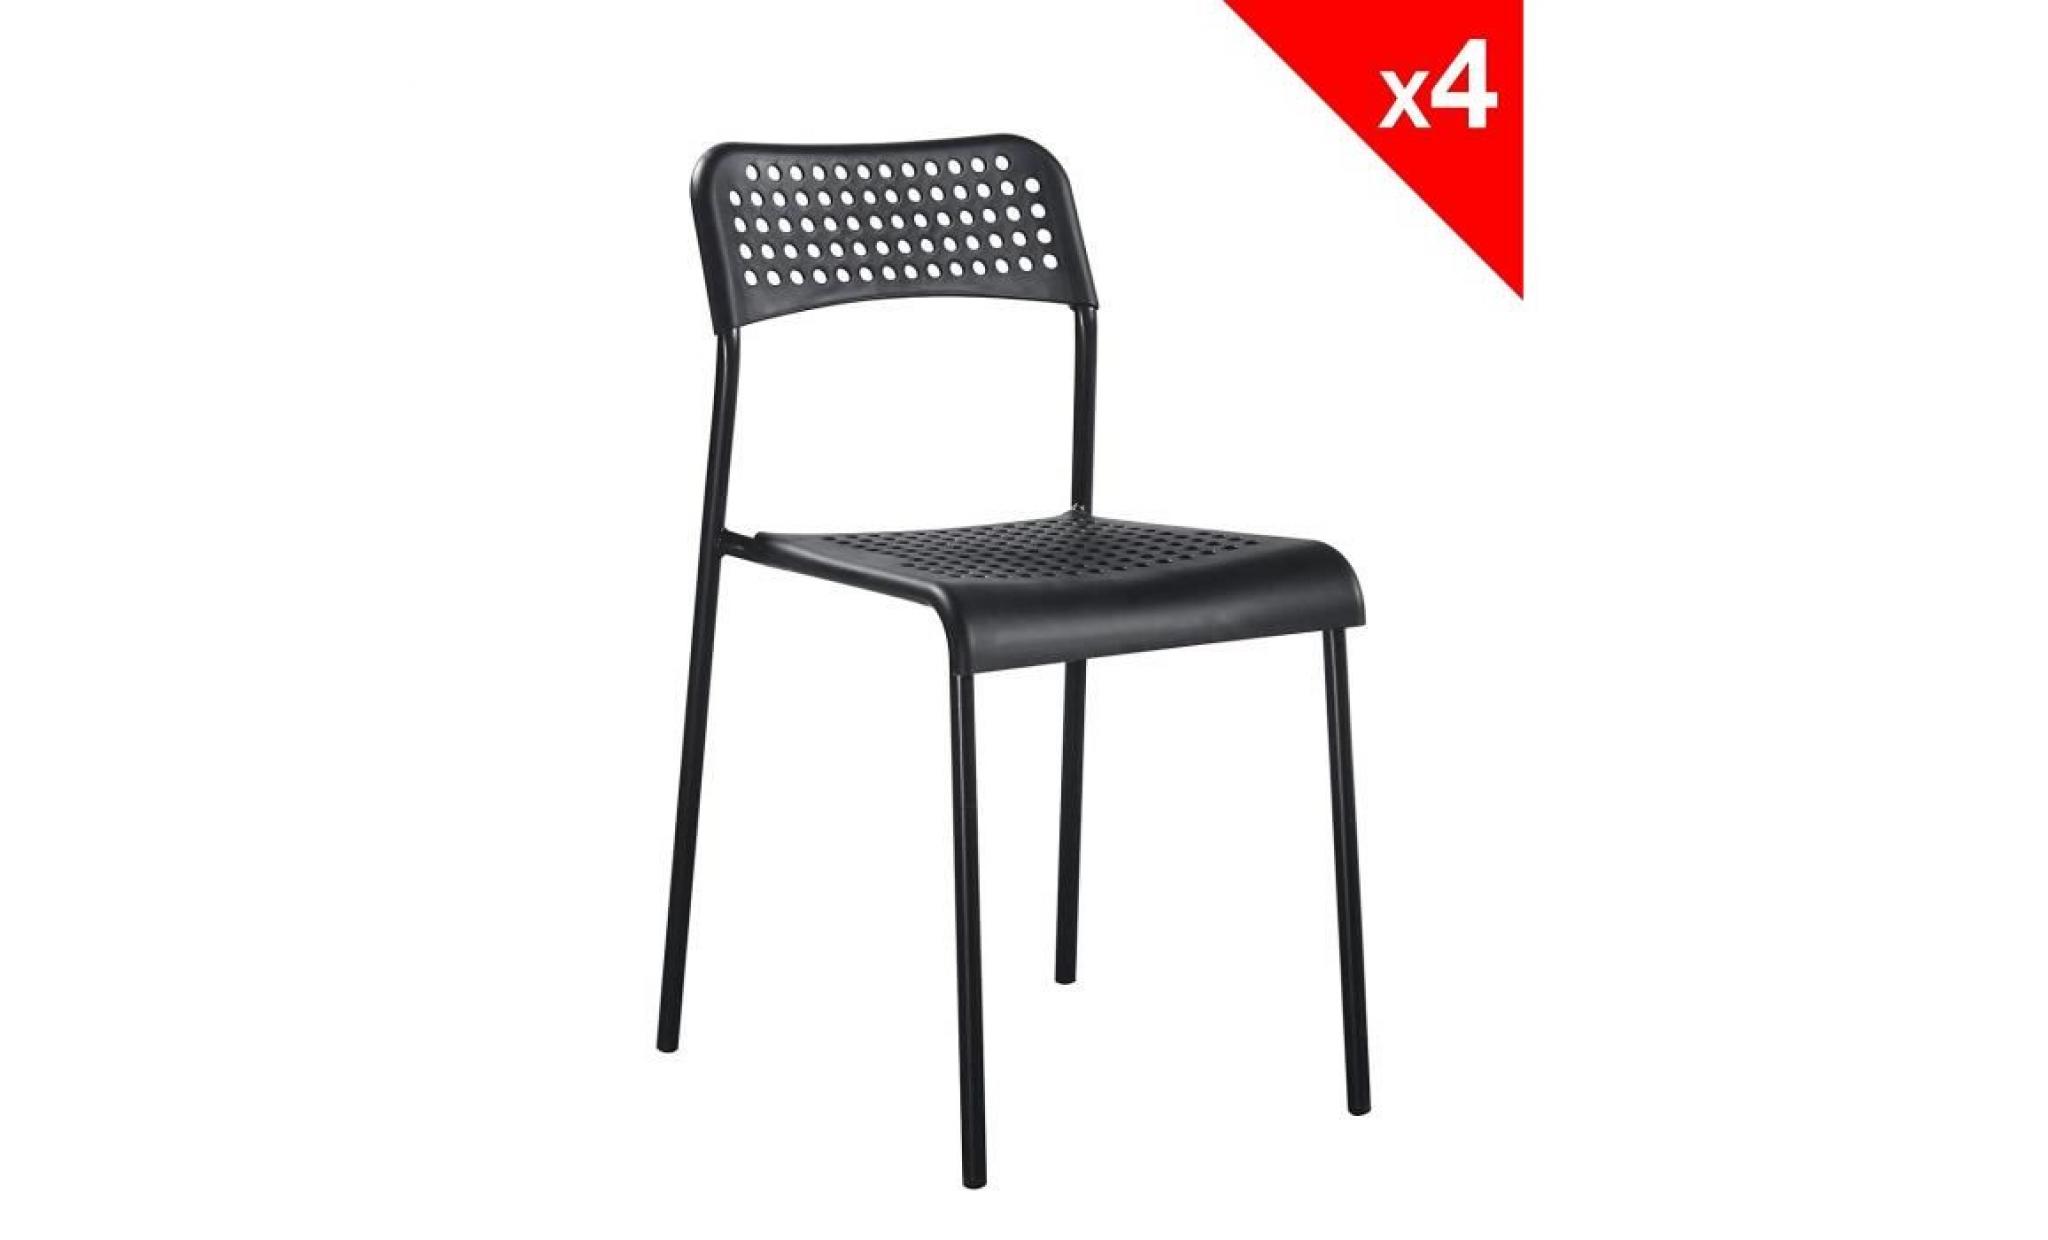 kayelles chaises empilables echo   lot de 4 chaises métal et pp (blanc) pas cher